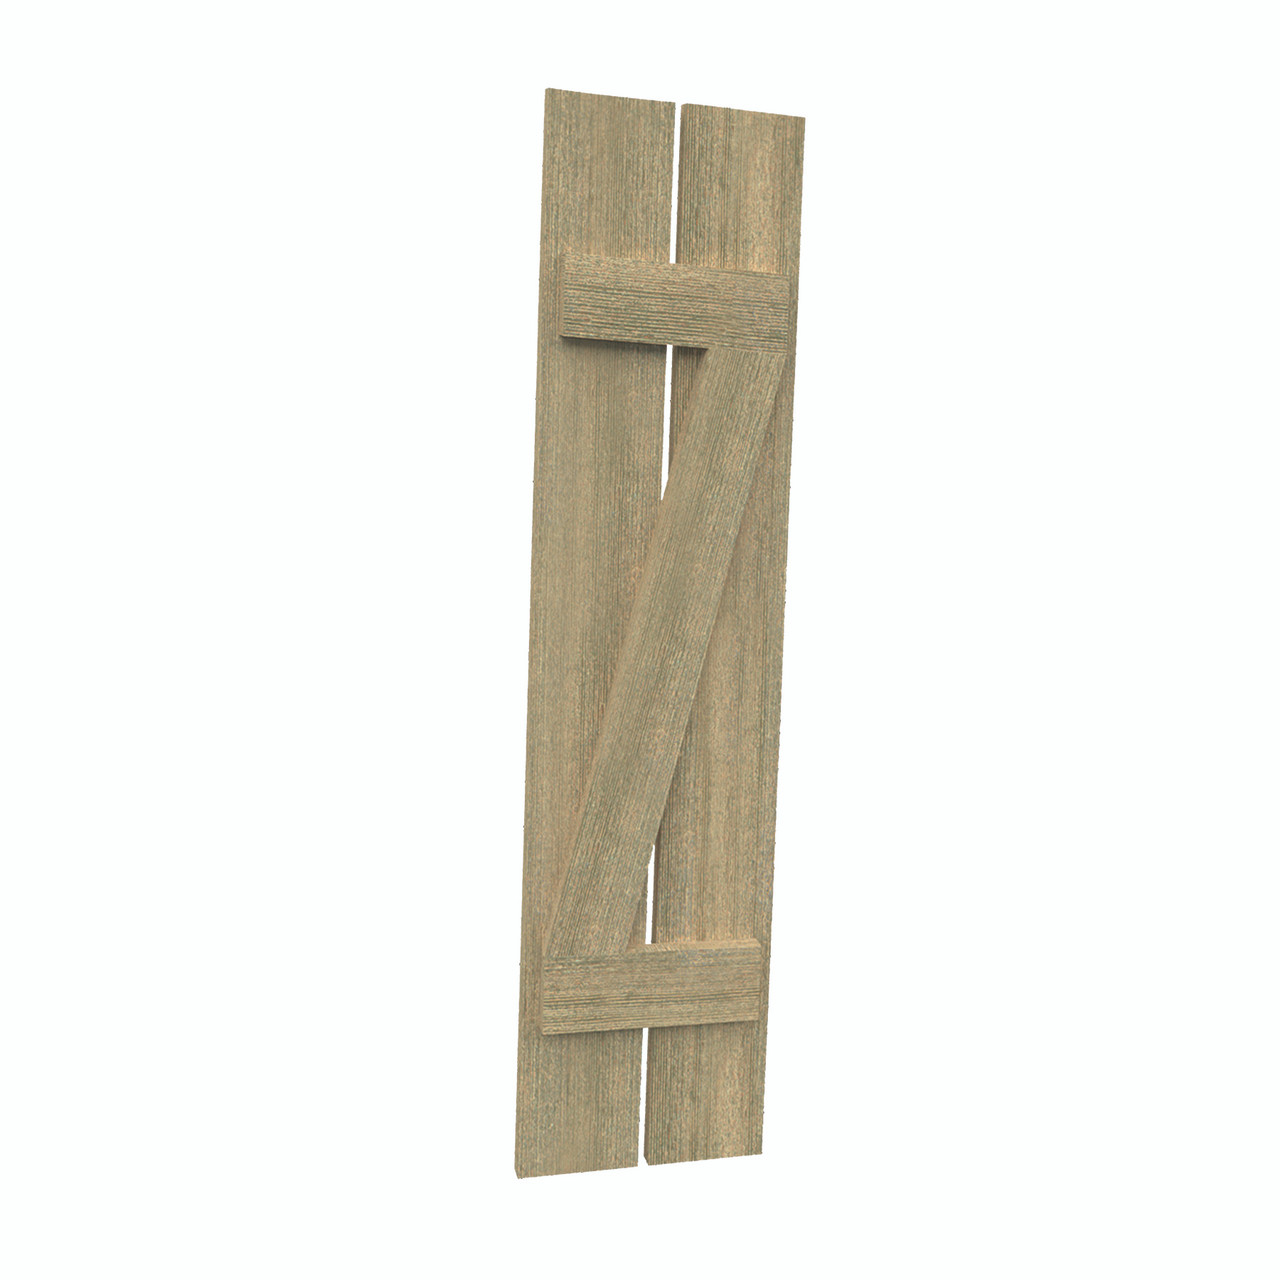 12 inch by 76 inch Plank Shutter with 2-Plank, Z-Batten